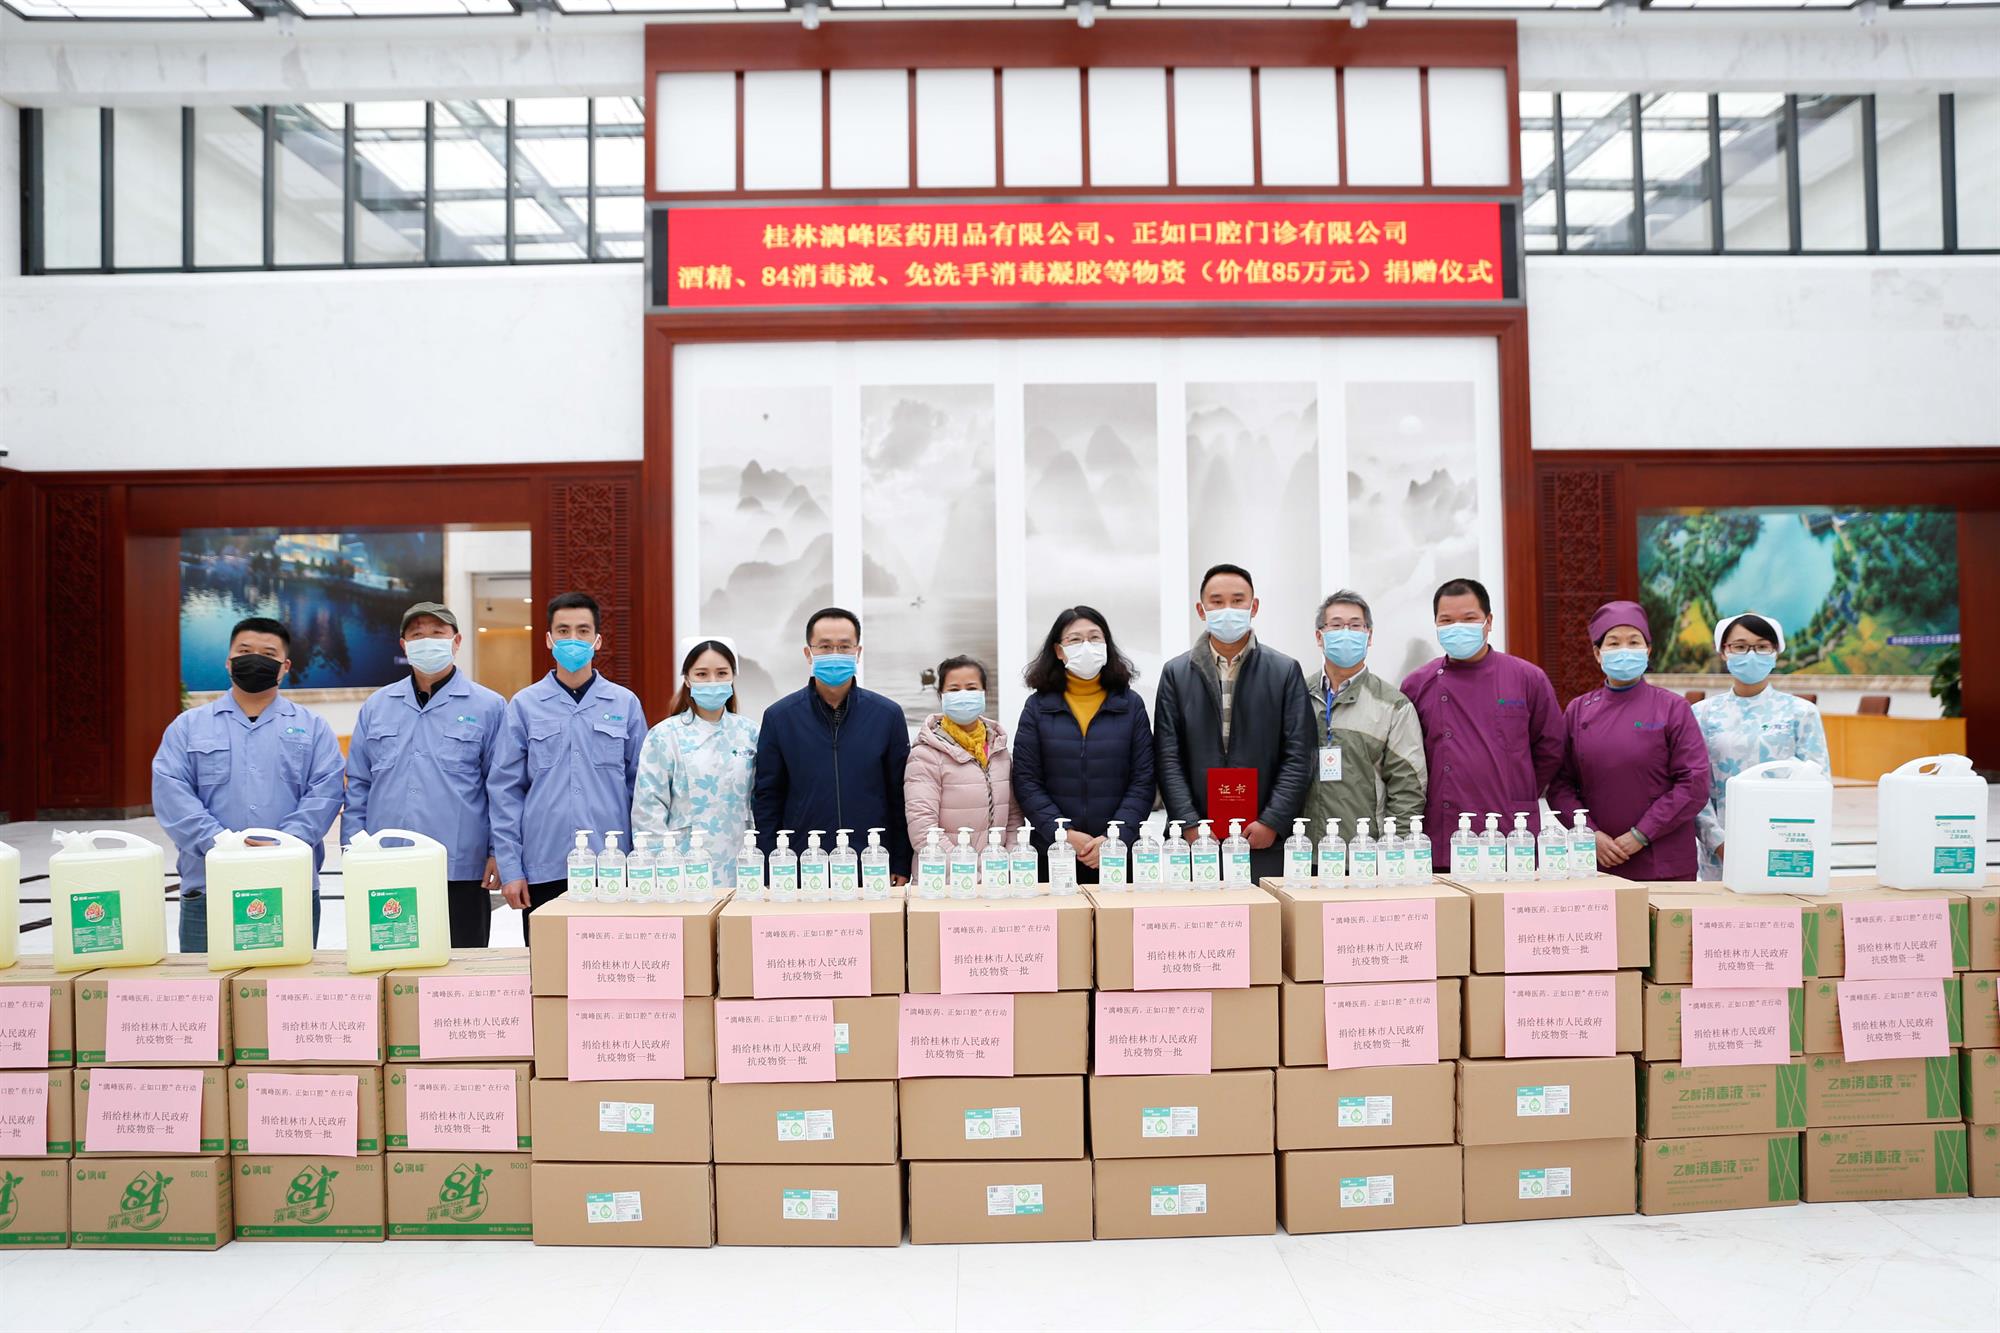 【漓峰益行】桂林漓峰向桂林人民政府捐赠85万元消毒液用于医院及学校的疫情防疫工作